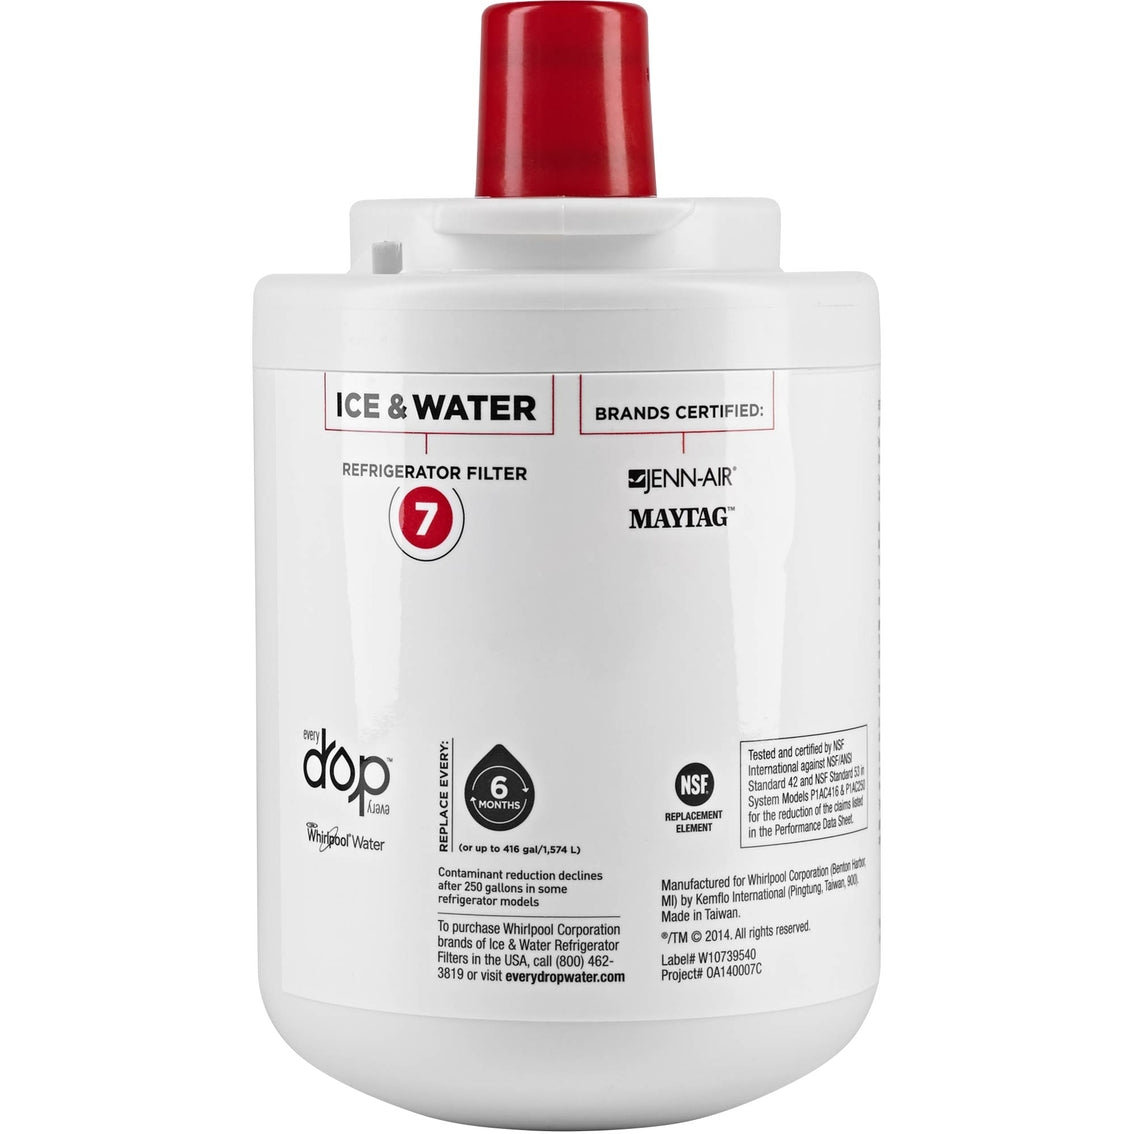 Filtro de Agua #7 para refrigeradores (Ref. W10790822)